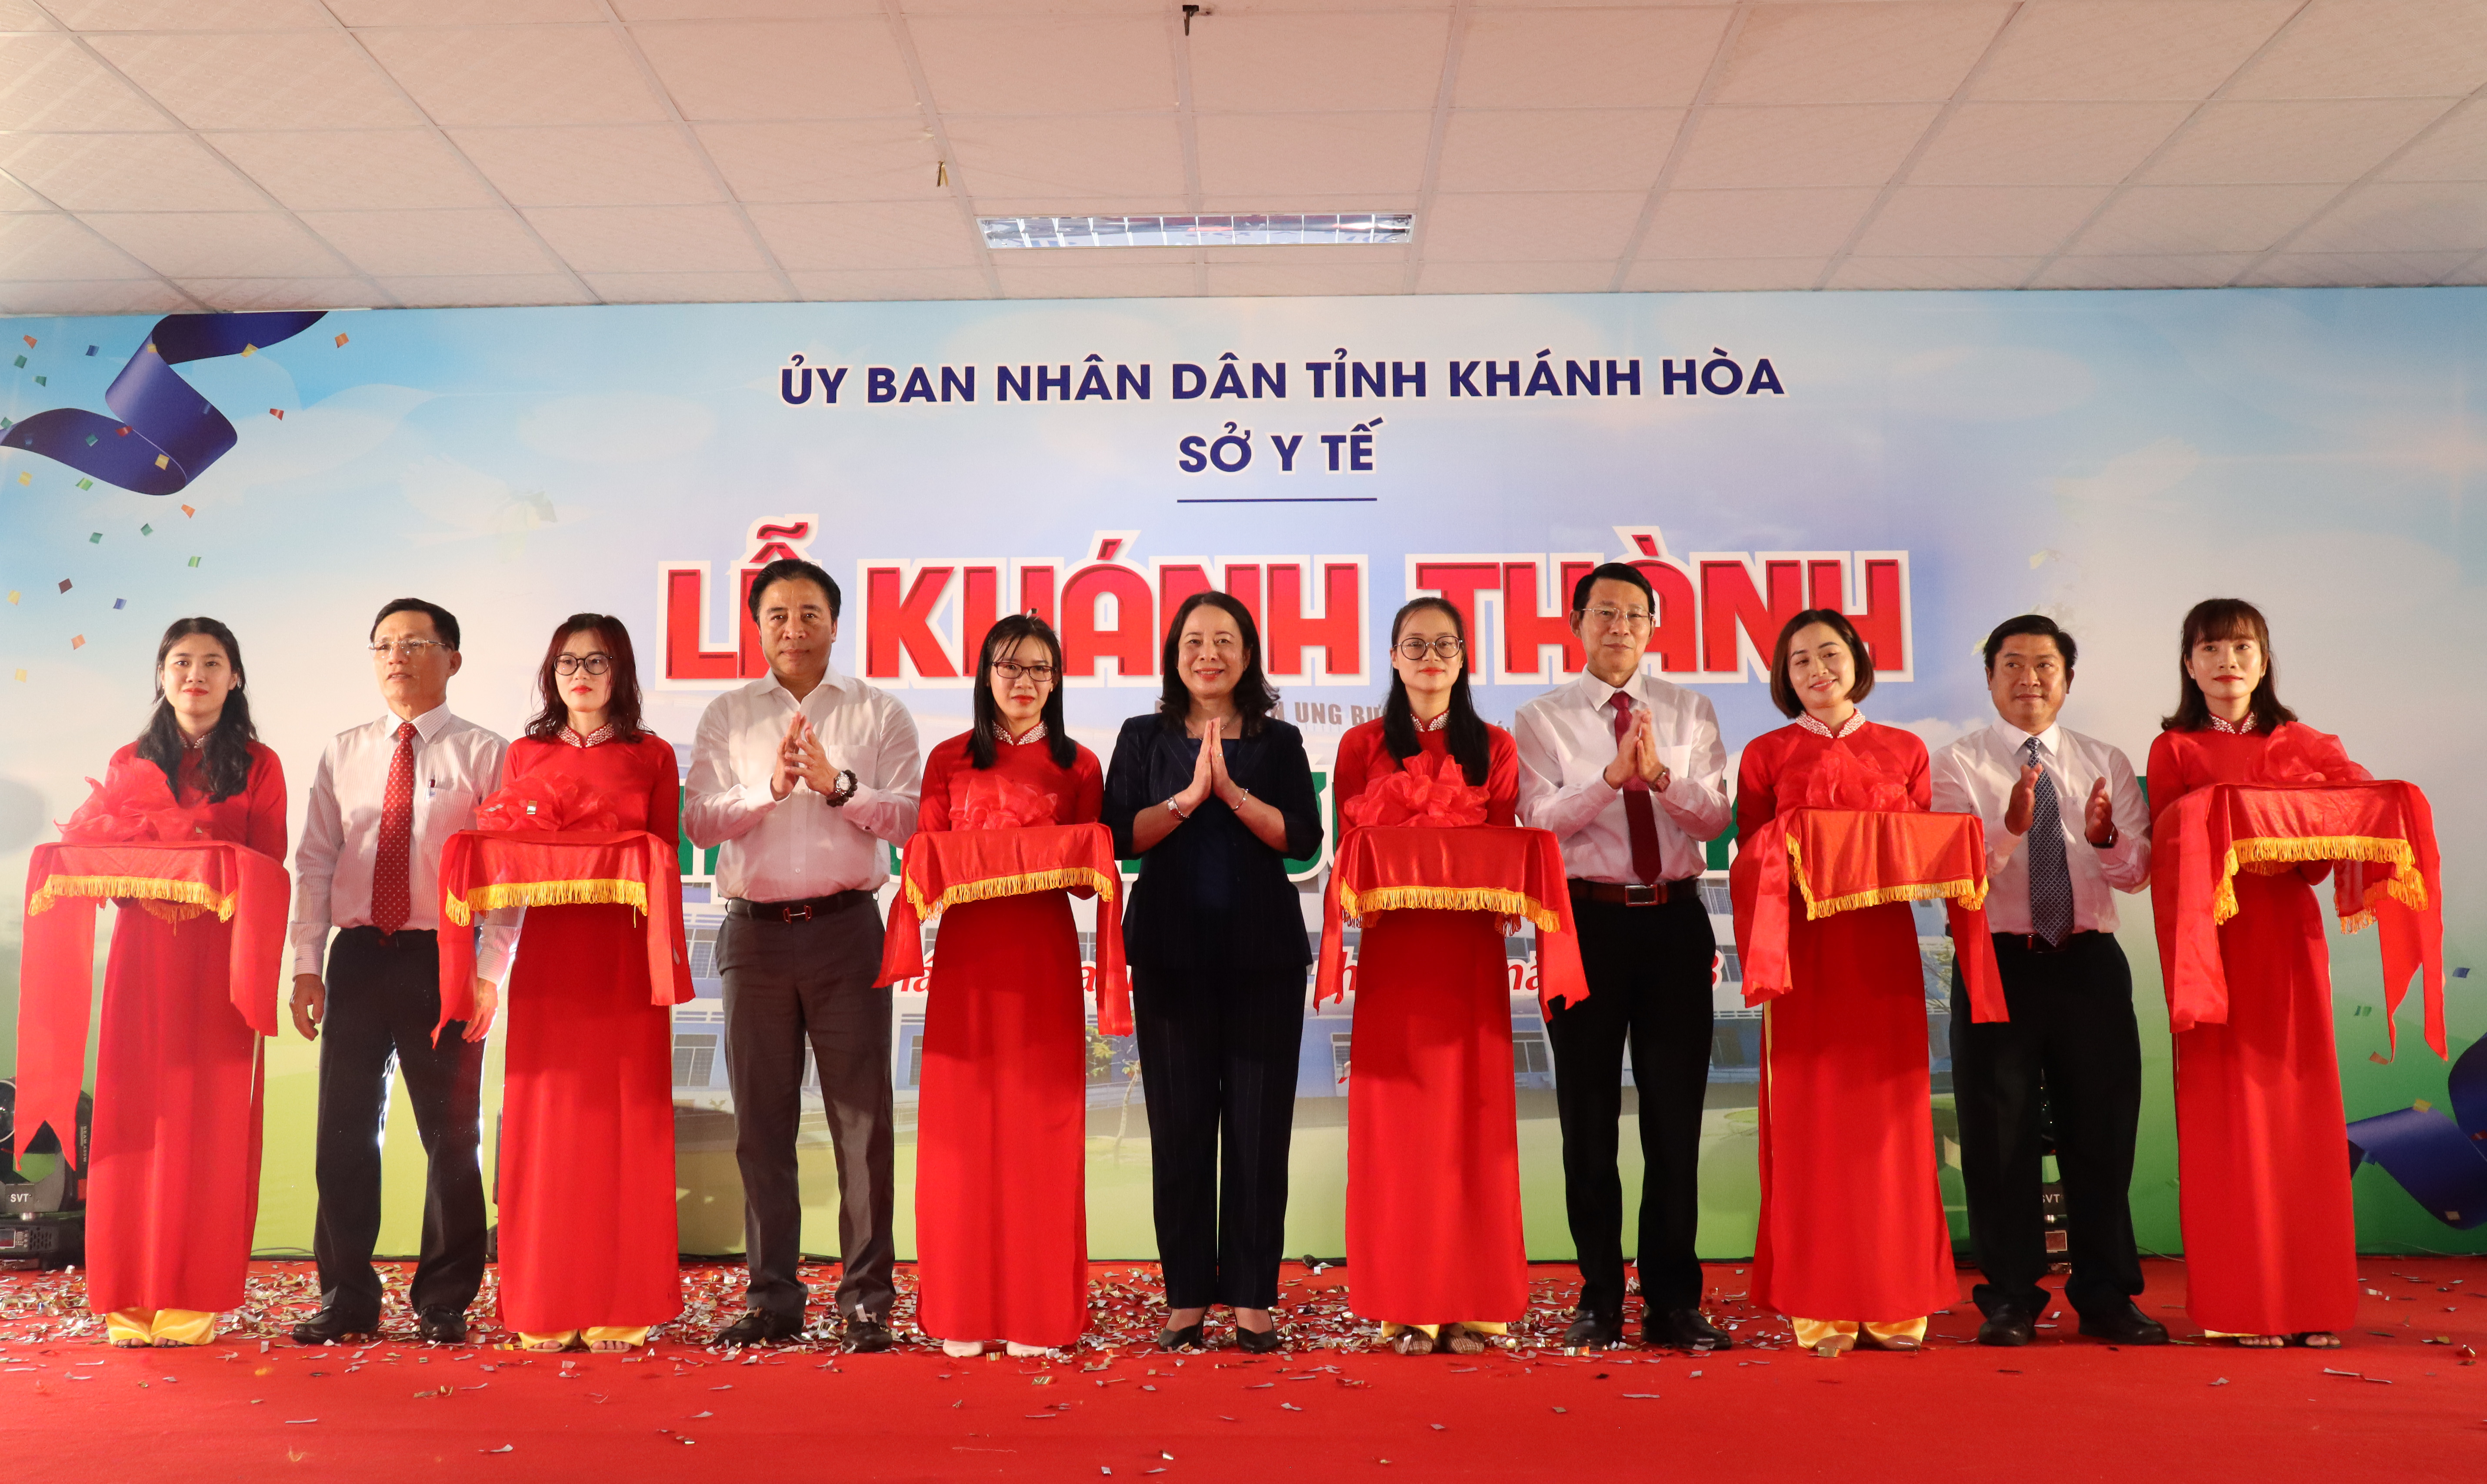 Phó Chủ tịch nước Võ Thị Ánh Xuân dự lễ khánh thành Bệnh viện Ung bướu Khánh Hòa